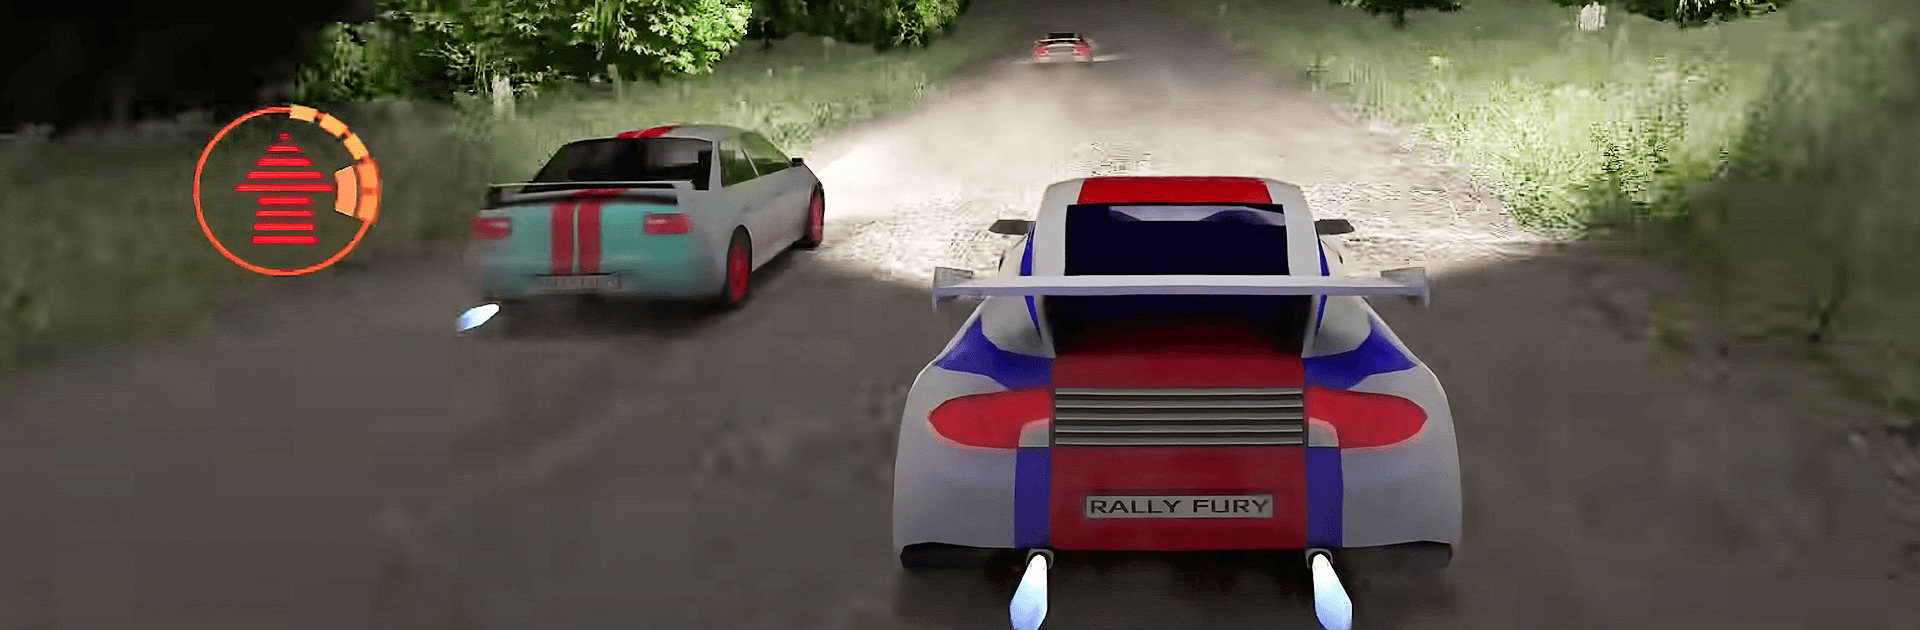 Rally Fury - Carreras de coches de rally extrema